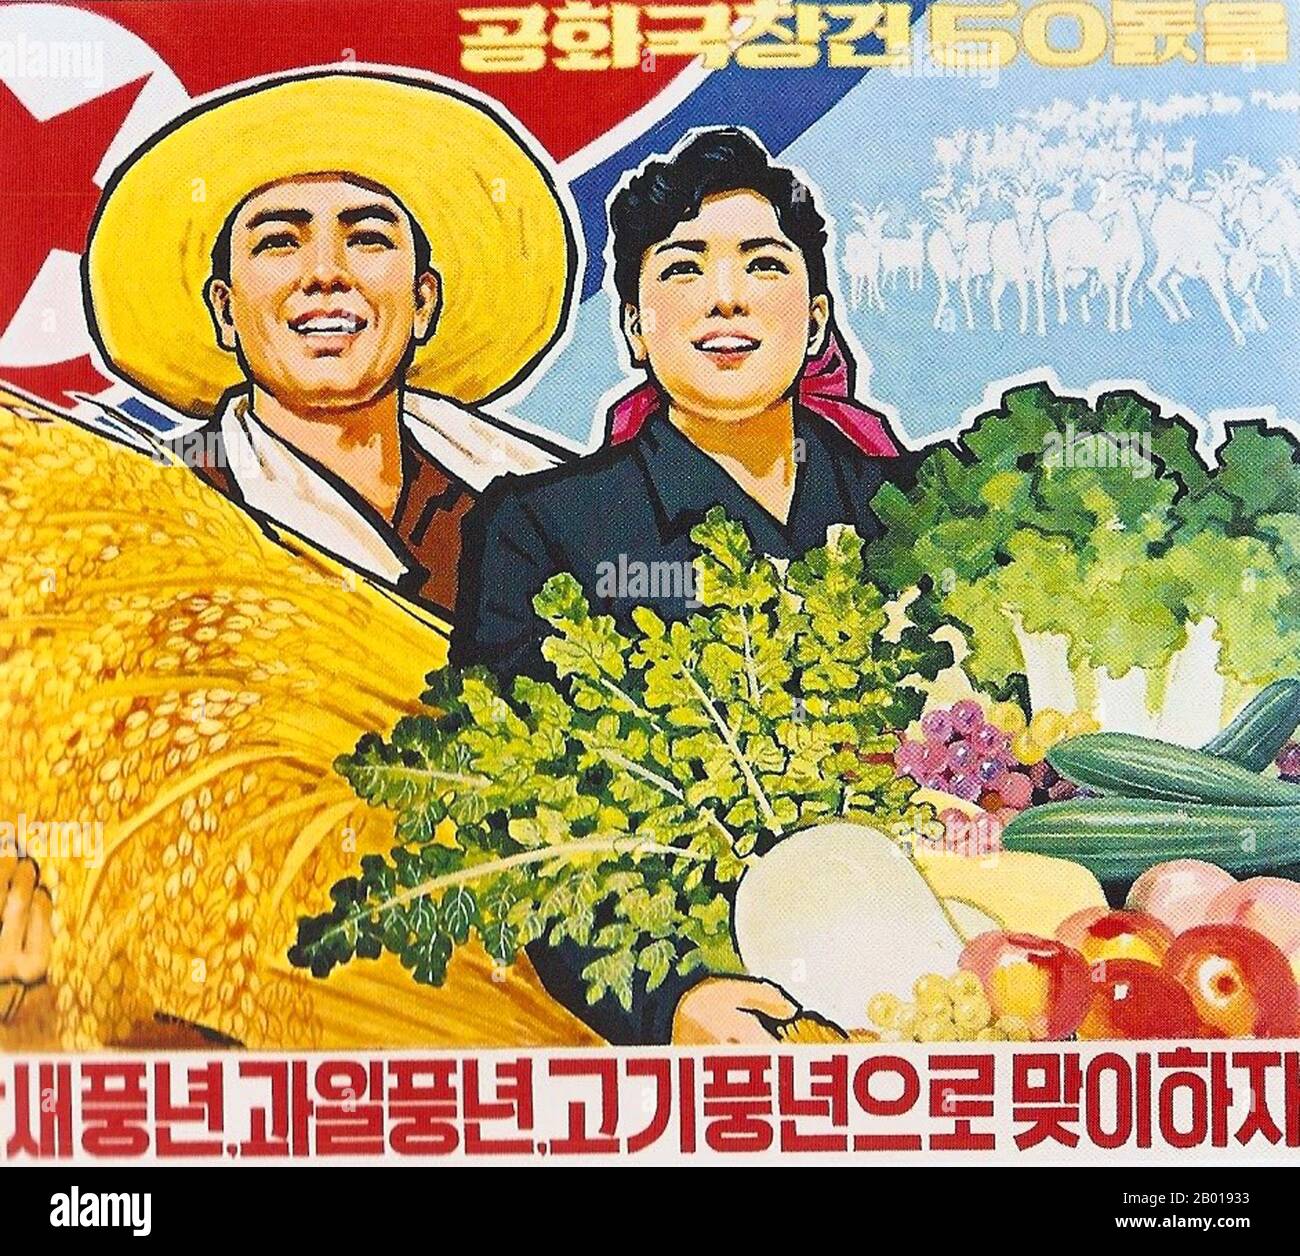 Korea: Nordkoreanisches (DVRK) Propagandaplakat, das die landwirtschaftliche Produktion verherrlicht, c. 1950s. Sozialistischer Realismus ist ein Stil realistischer Kunst, der sich unter dem Sozialismus in der Sowjetunion entwickelte und in anderen kommunistischen Ländern zu einem dominanten Stil wurde. Der sozialistische Realismus ist ein teleologisch orientierter Stil, der die Förderung der Ziele des Sozialismus und Kommunismus zum Ziel hat. Obwohl verwandt, sollte sie nicht mit dem sozialen Realismus verwechselt werden, einer Art Kunst, die Themen sozialer Belang realistisch darstellt. Der sozialistische Realismus verherrlicht im Allgemeinen die Ideologie des kommunistischen Staates. Stockfoto